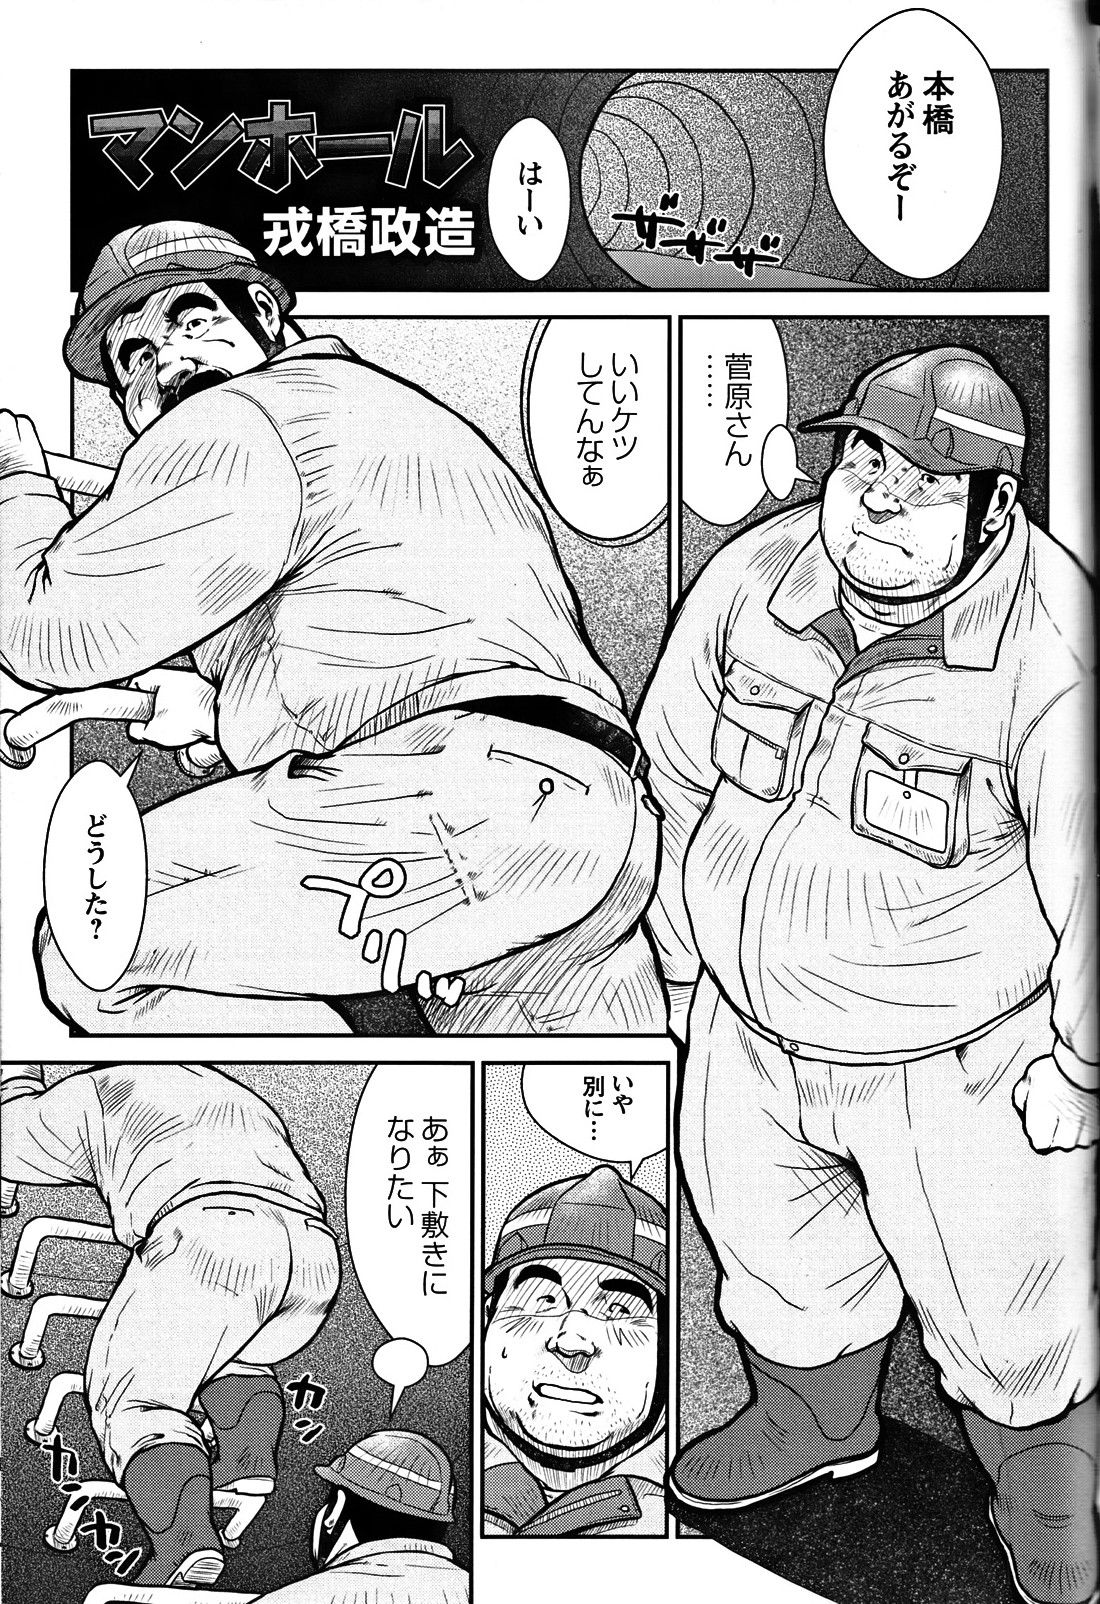 Comic G-men Gaho No. 06 Nikutai Roudousha page 28 full